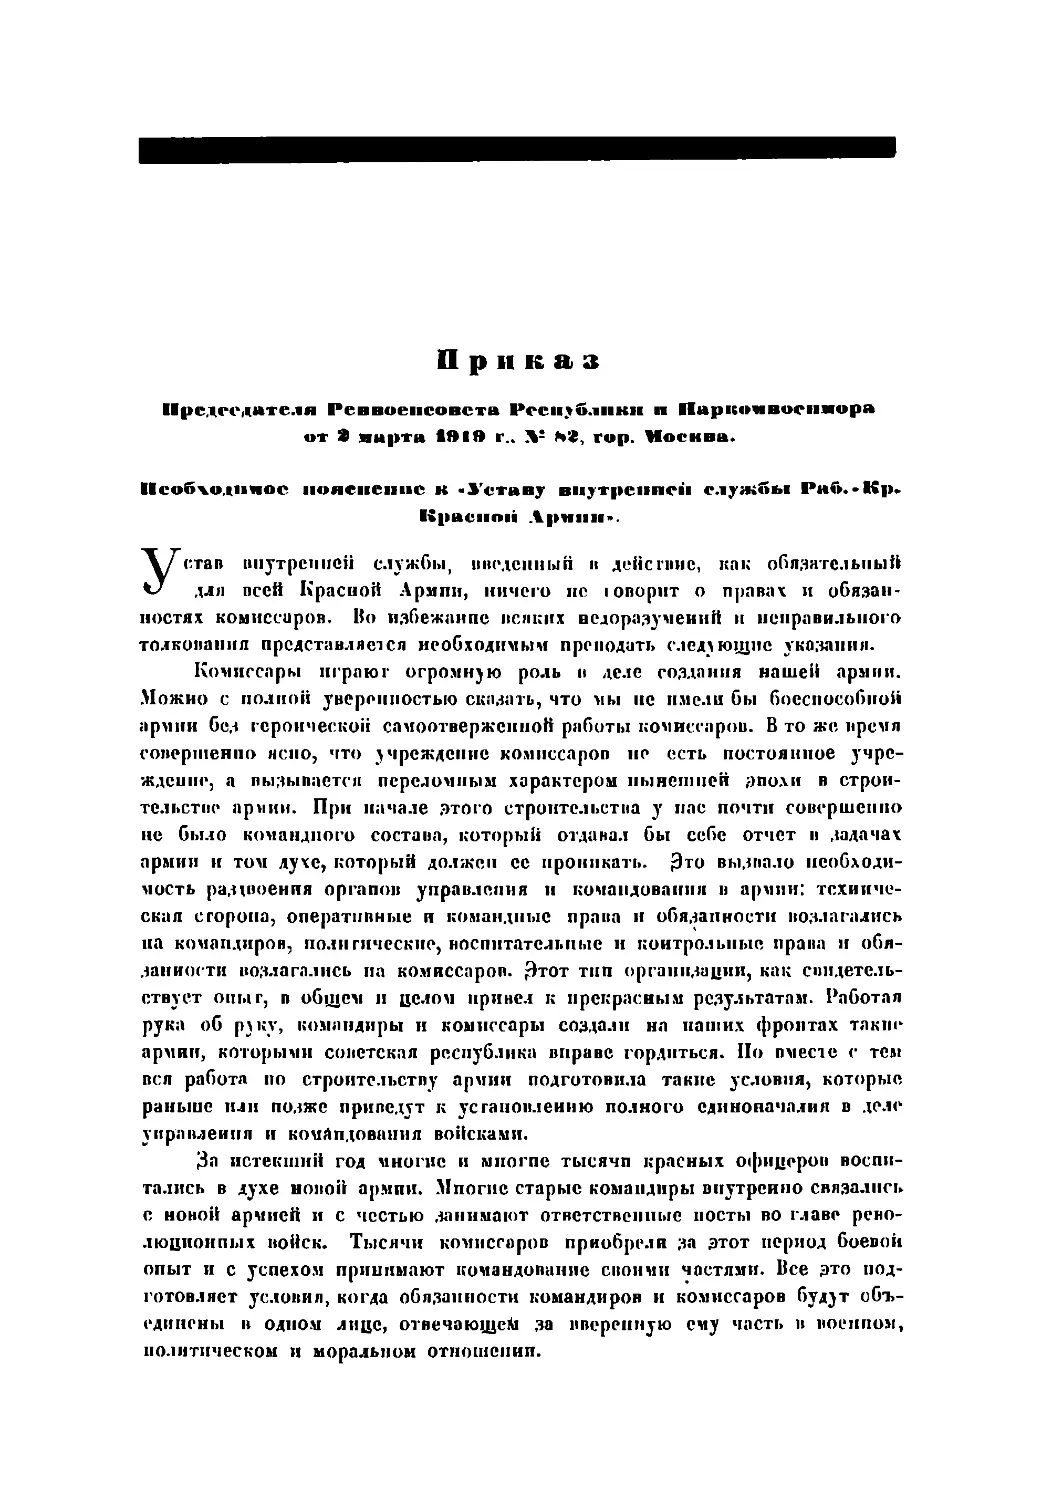 Првказ Пред. РВСР и Наркомвоенмора по Красной Армии от 3 марта 1919 г., № 82, гор.